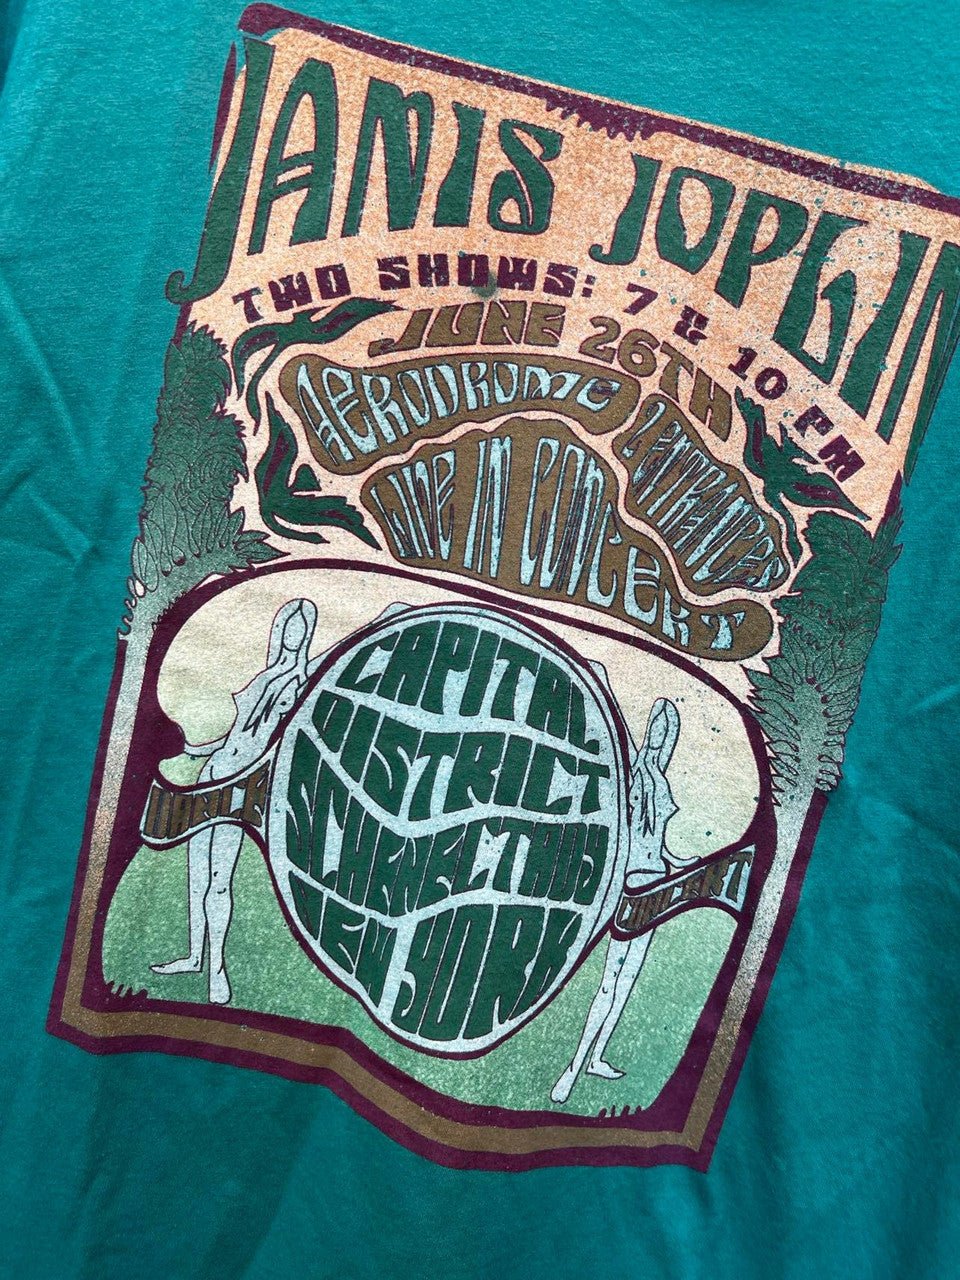 Janis Poster T - Shirt - Ya Ya Gurlz